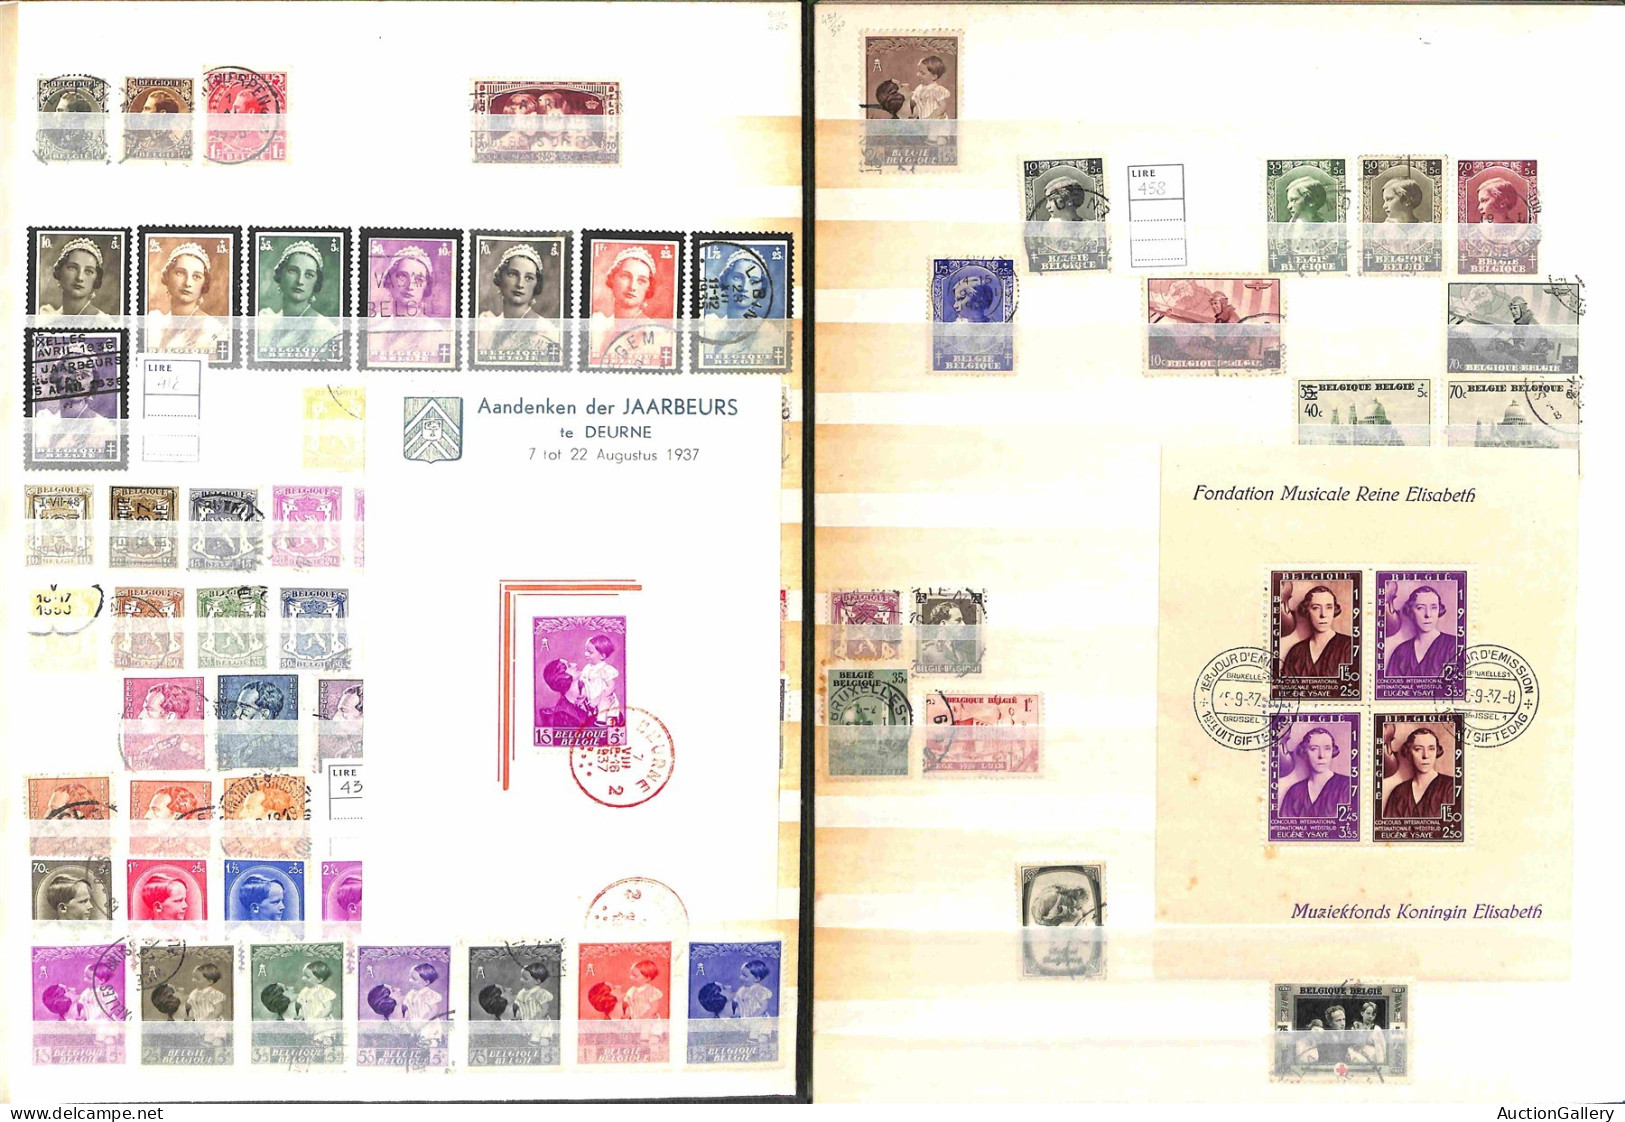 Lotti e Collezioni - Europa e Oltremare - BELGIO - 1849/1991 - Collezione di valori serie complete e alcuni foglietti de